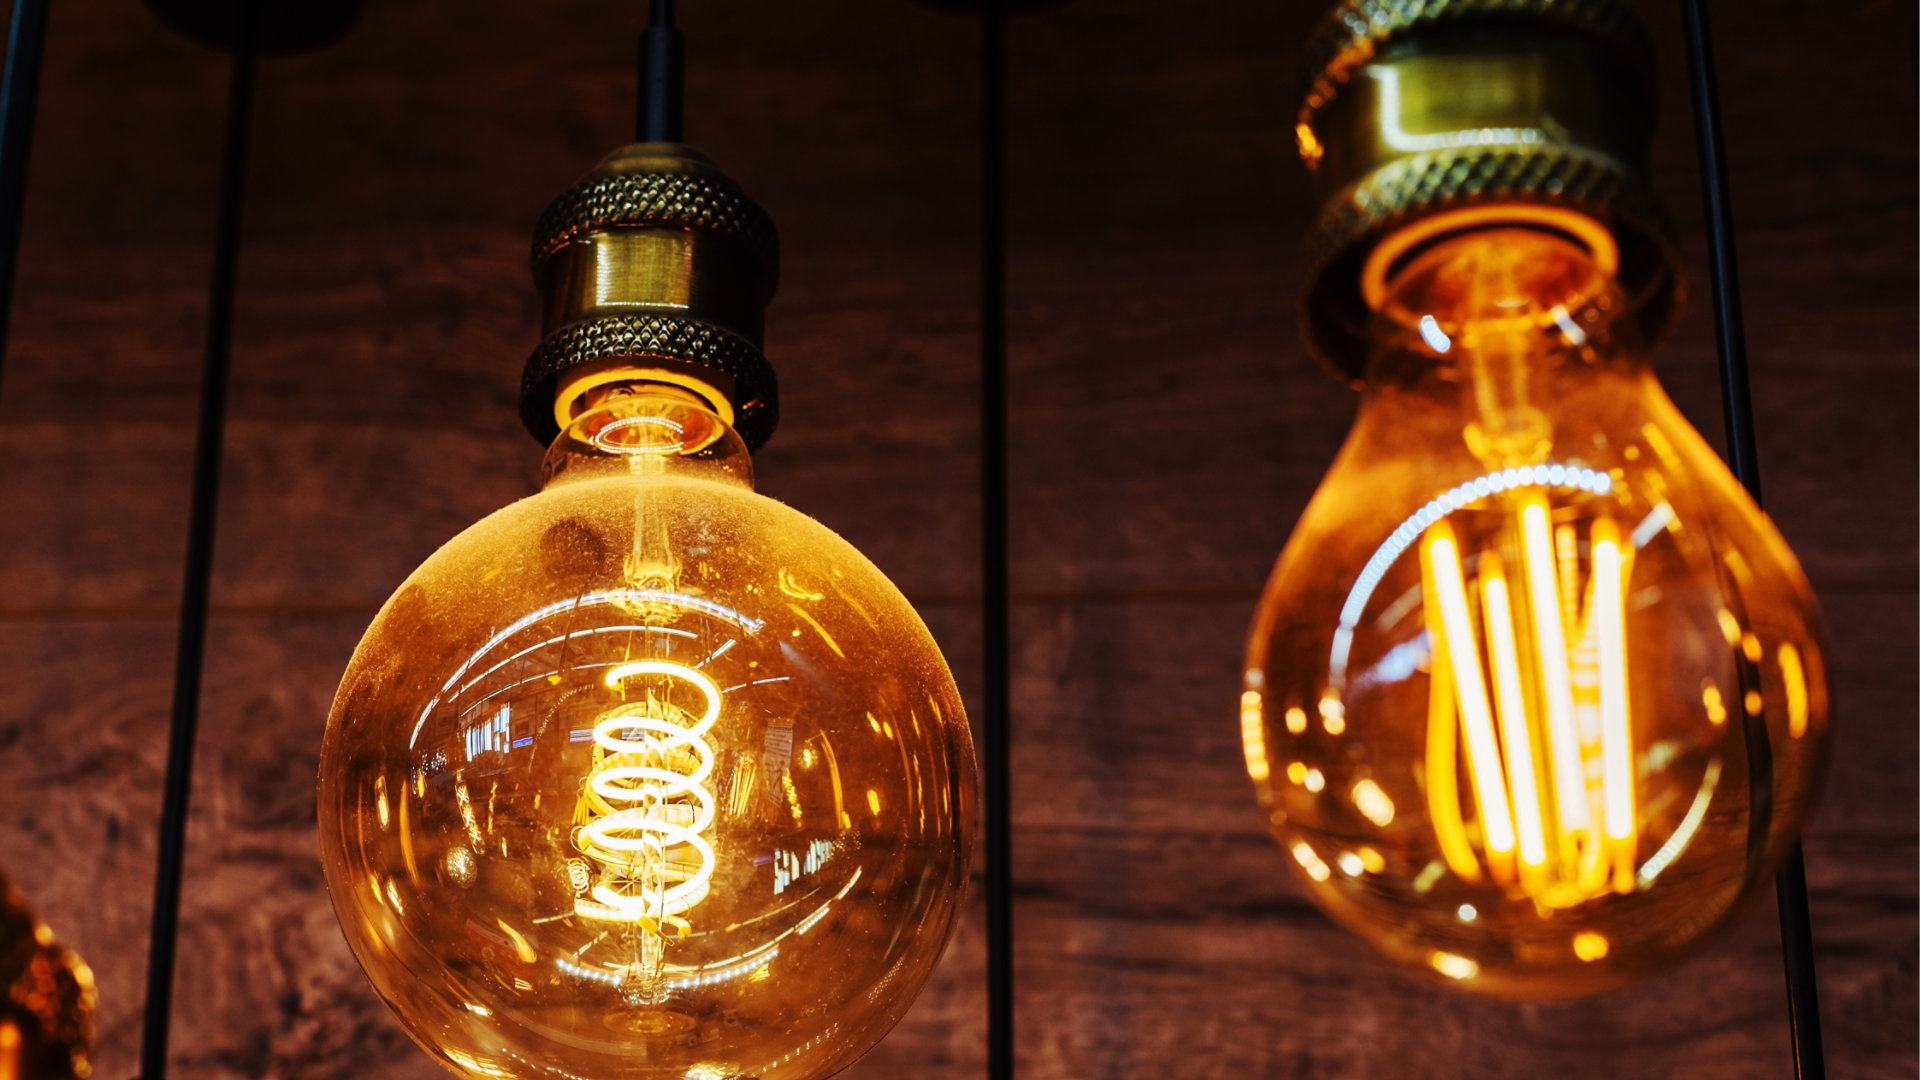 Industrial light bulbs